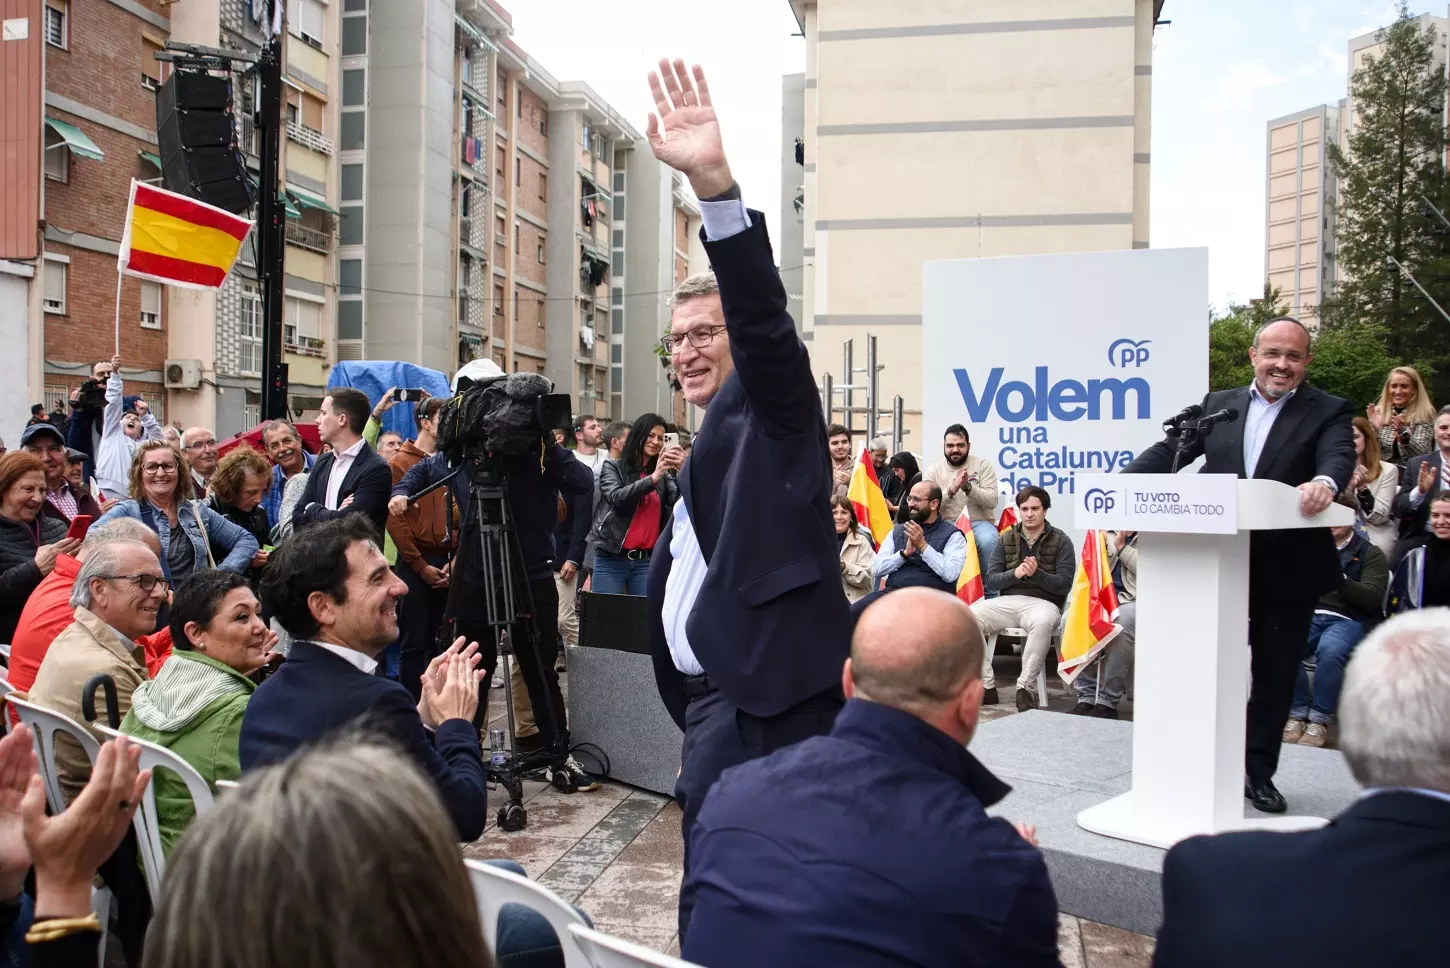 El PP de Feijóo radicaliza su discurso sobre inmigración en plena competición electoral con Vox